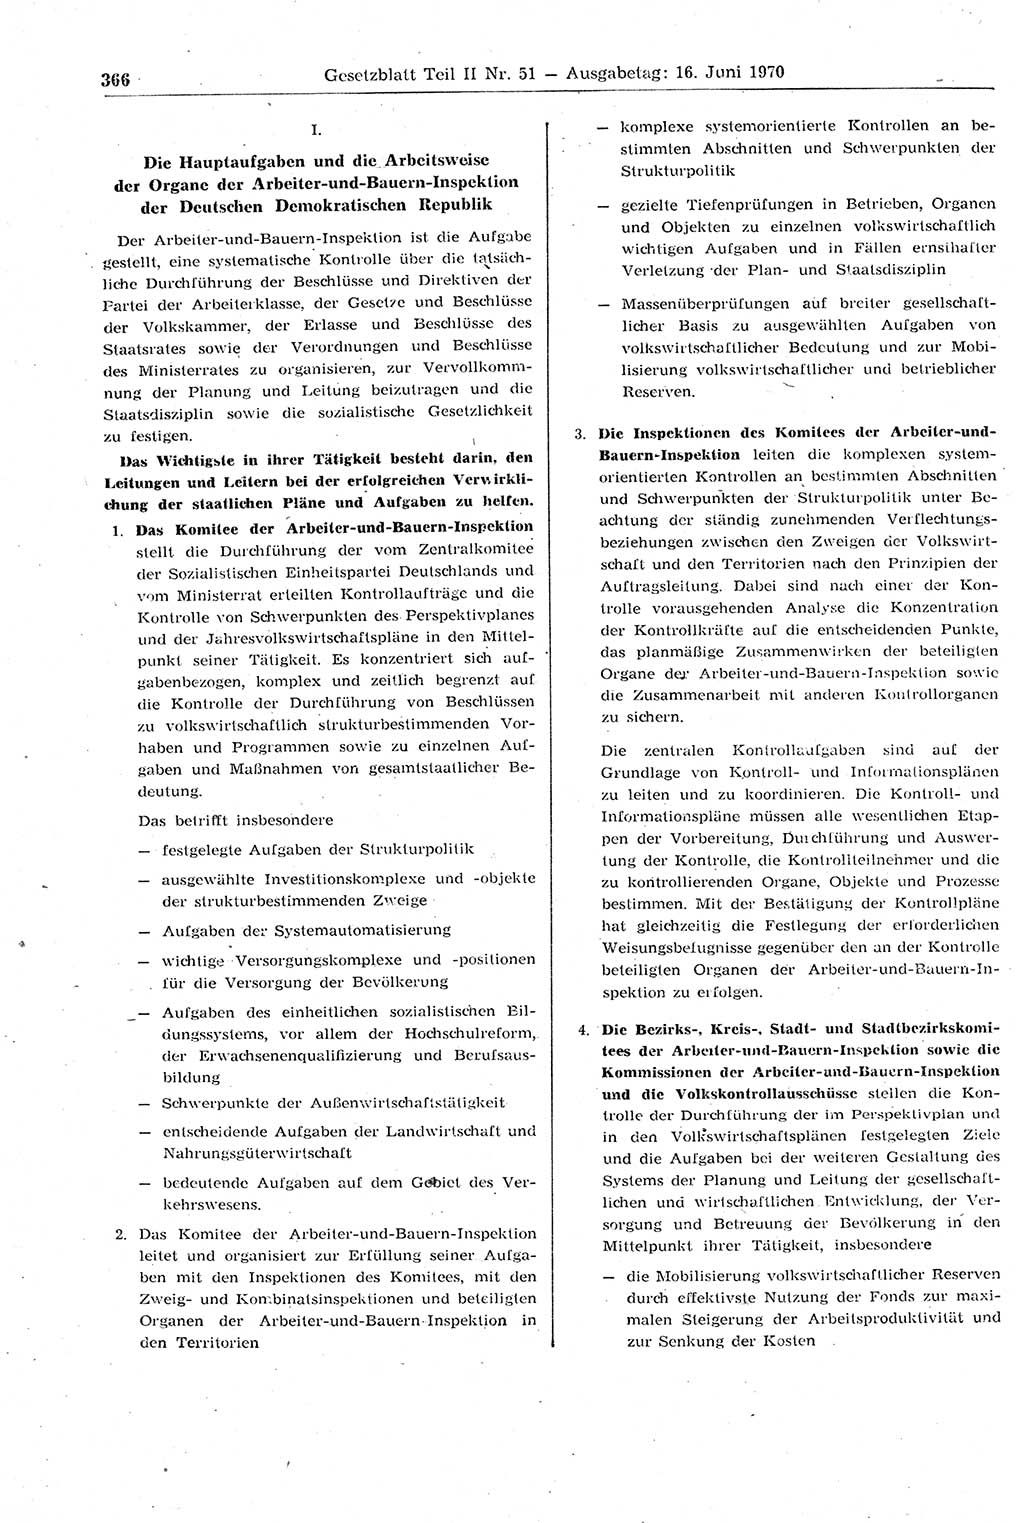 Gesetzblatt (GBl.) der Deutschen Demokratischen Republik (DDR) Teil ⅠⅠ 1970, Seite 366 (GBl. DDR ⅠⅠ 1970, S. 366)